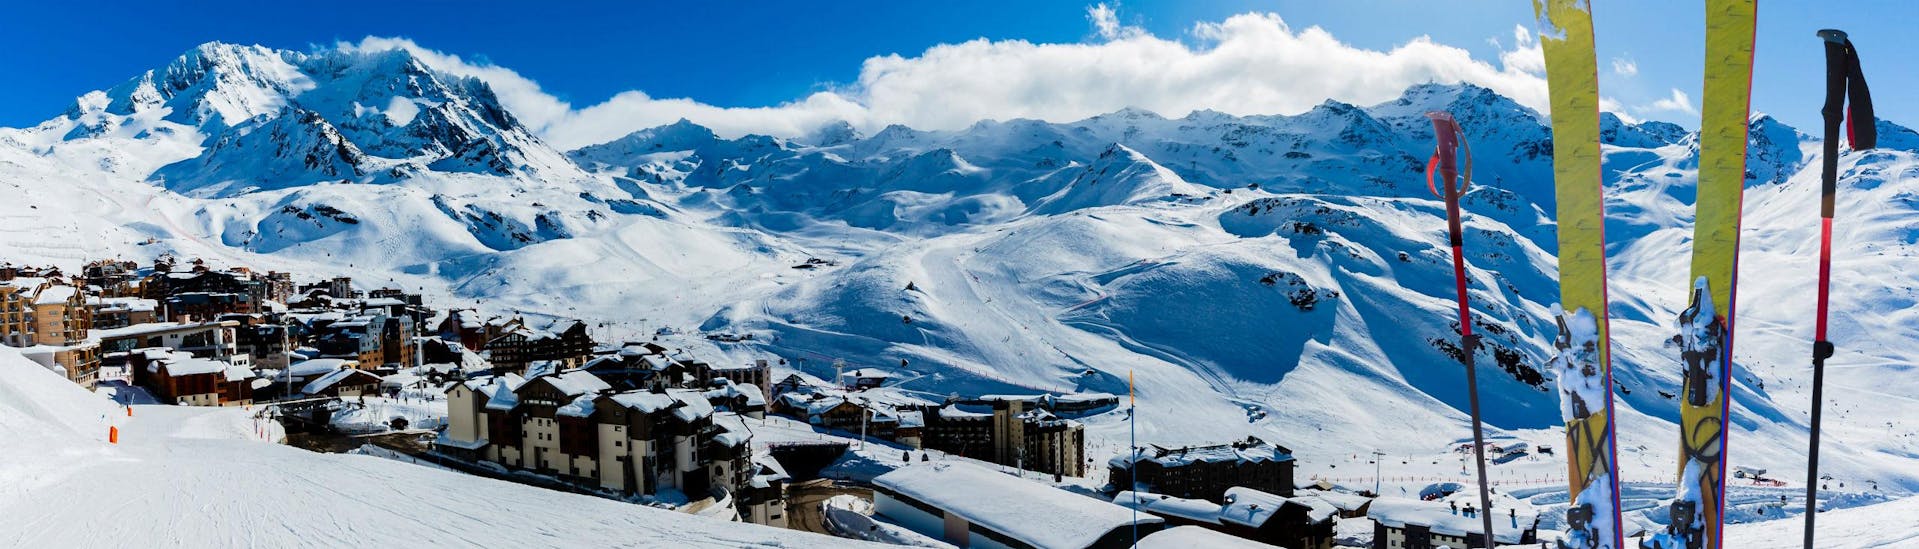 Ein Blick über das französische Skigebiet Val Thorens, wo Besucher, die das Skifahren lernen wollen, mit den örtlichen Skischulen Skikurse buchen können.